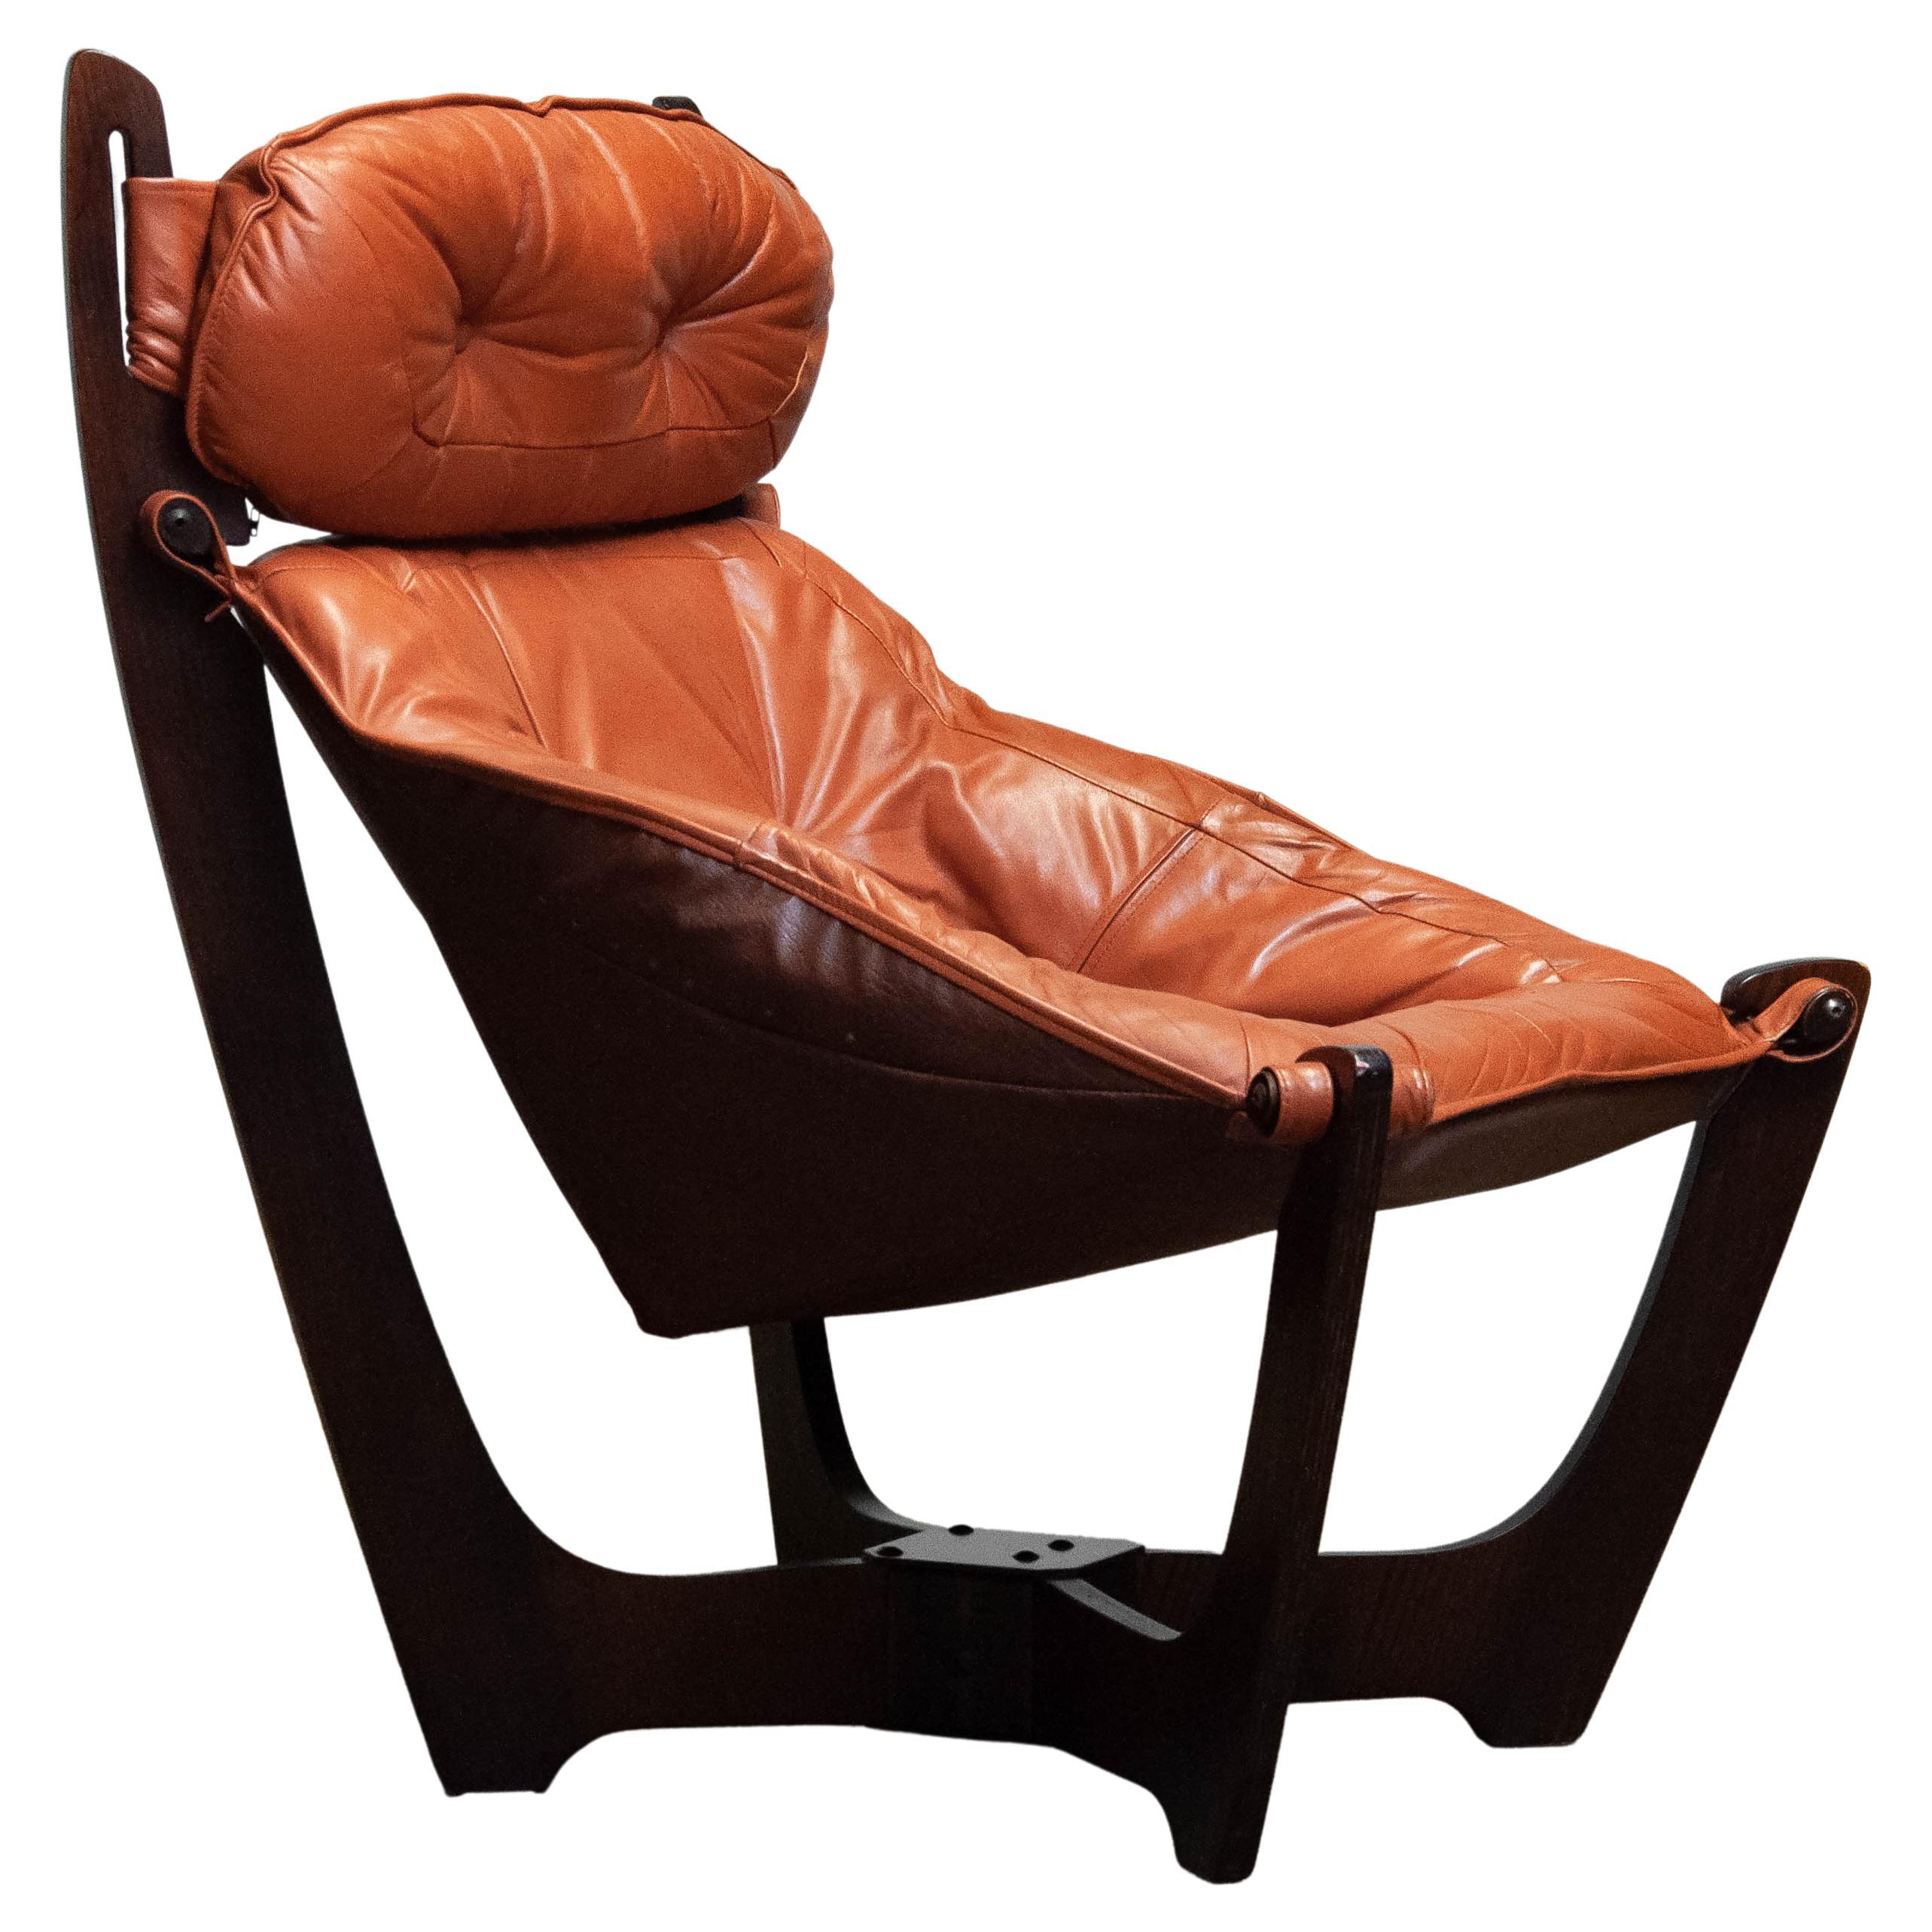 1970s Cognac Leather Lounge Chair 'Luna' by Odd Knutsen for Hjellegjerde Møbler